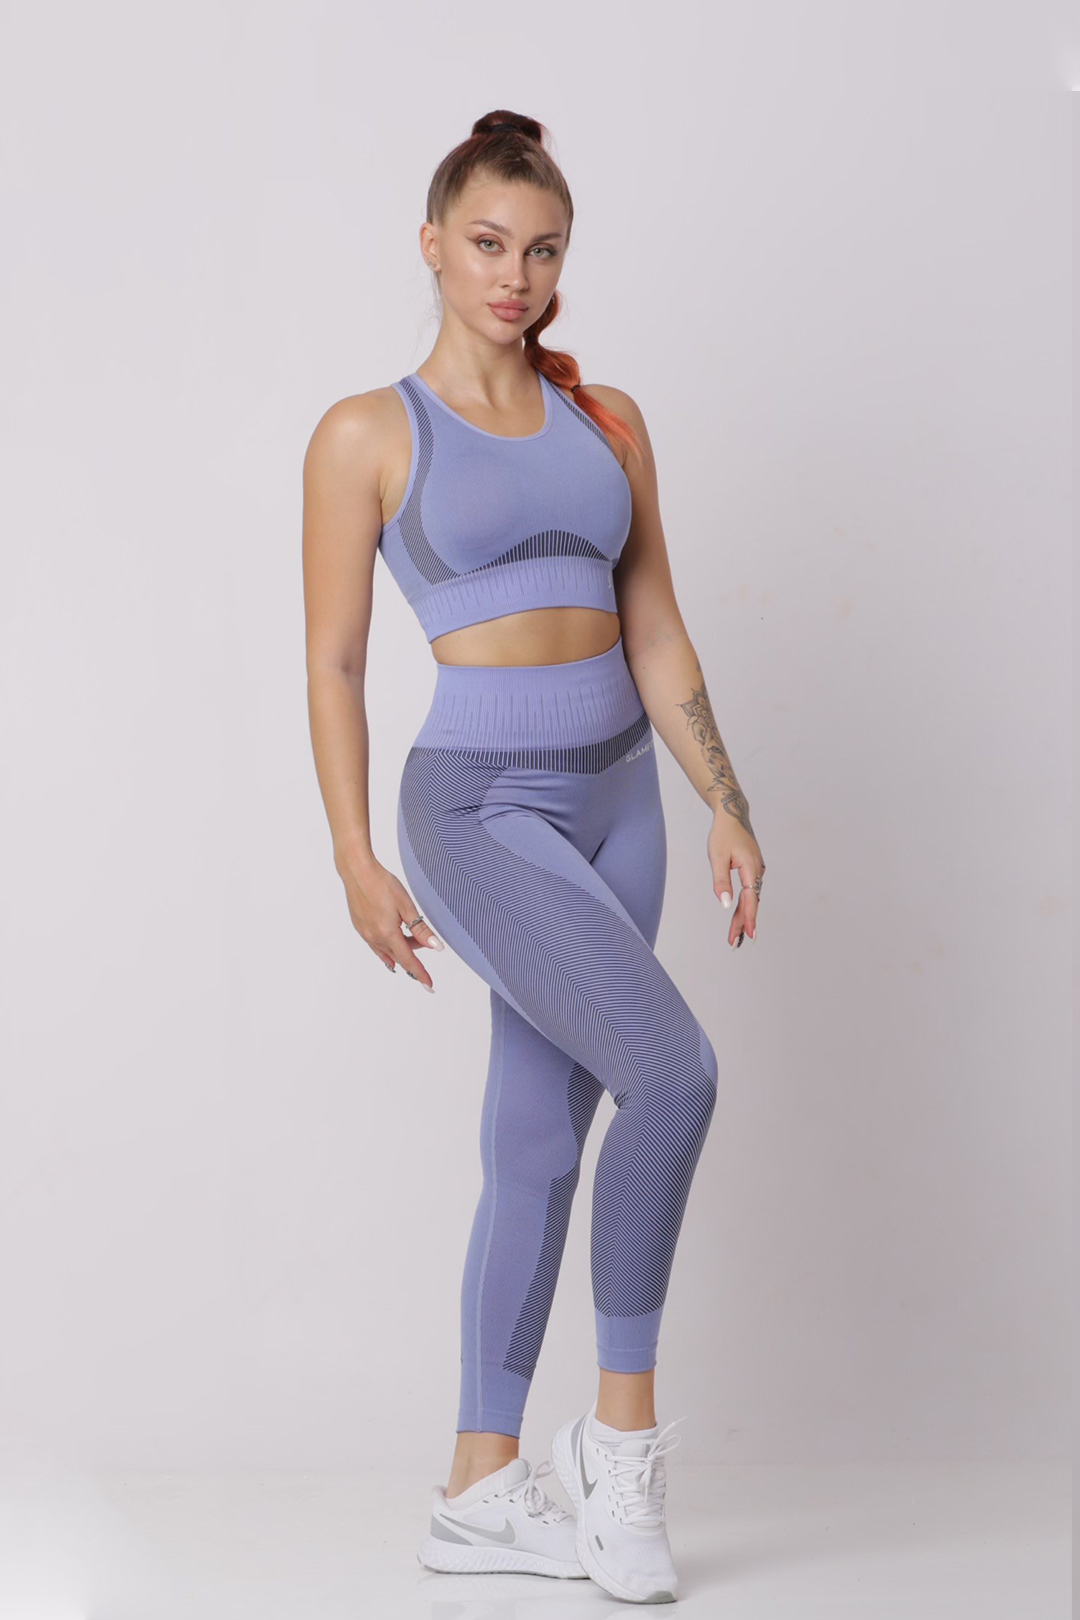 GLOWMODE FeatherFit™ Strappy Back Sports Bra  Activewear sale, Sports bra,  Active wear for women